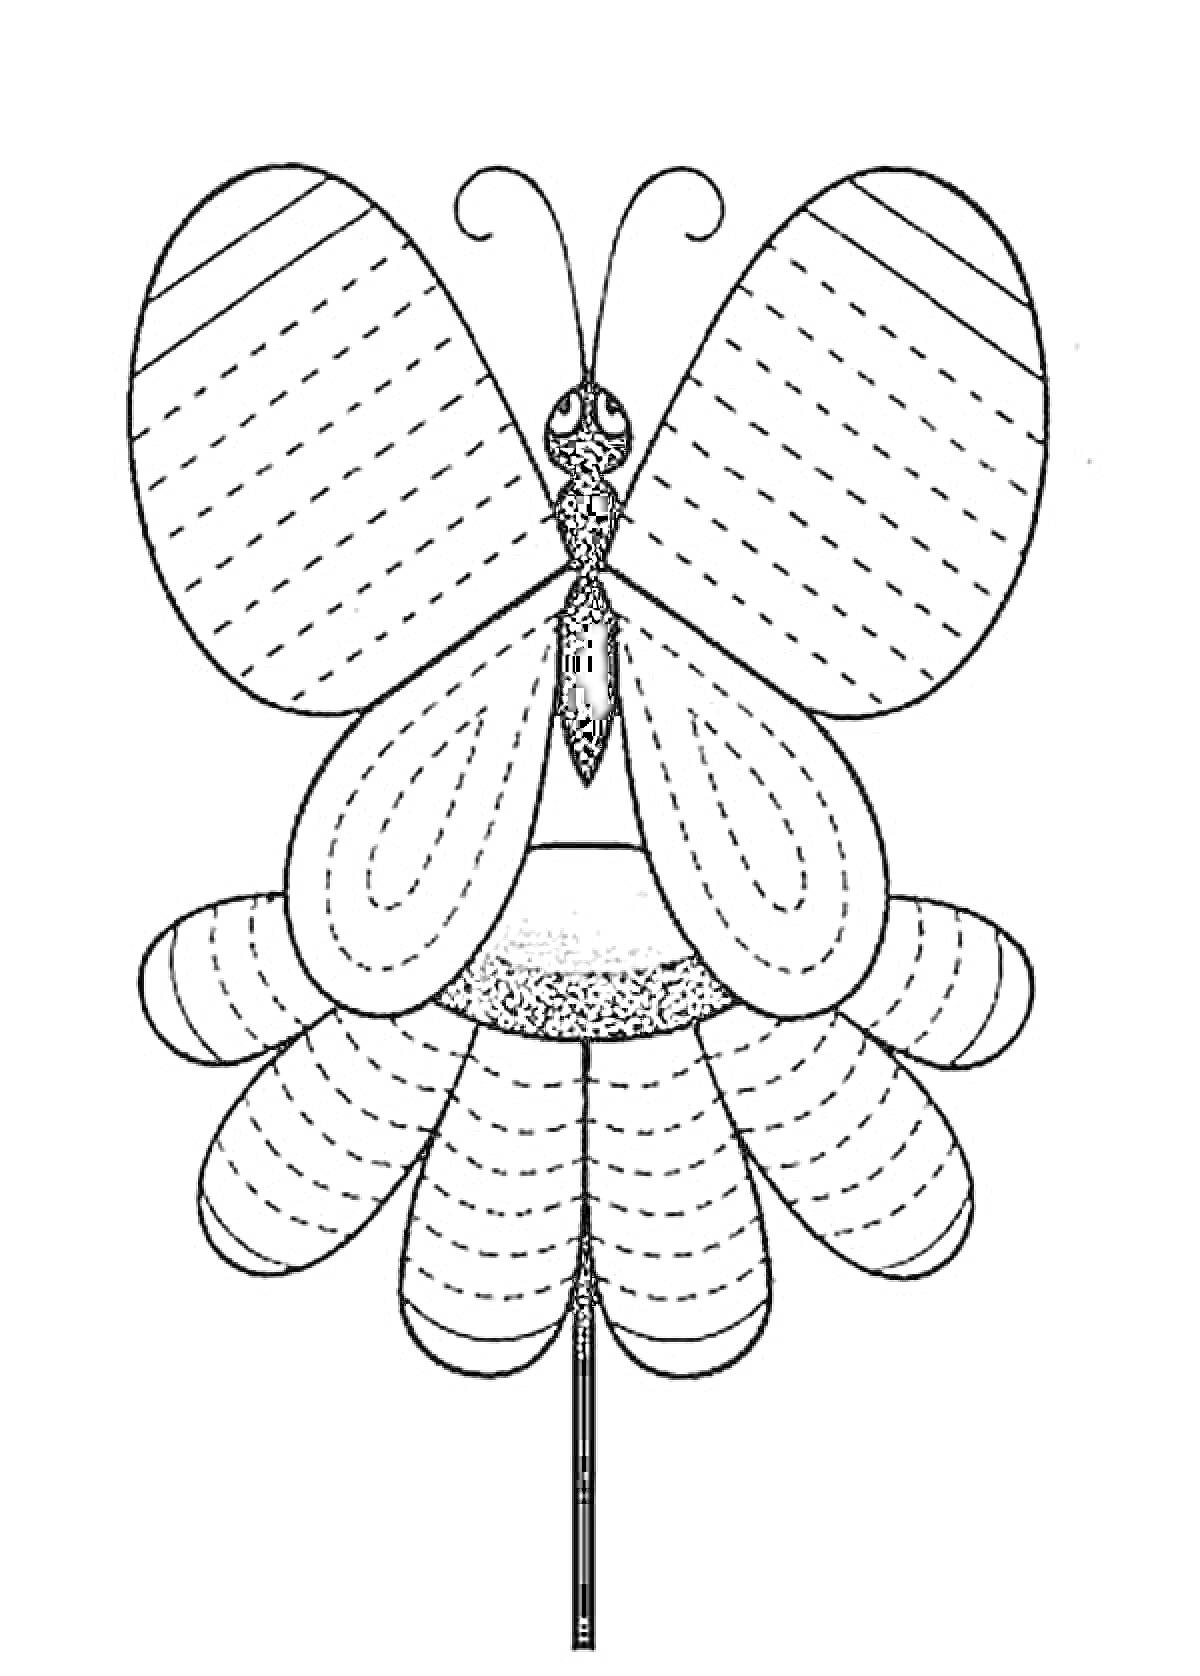 Раскраска Бабочка на цветке с элементами штриховки